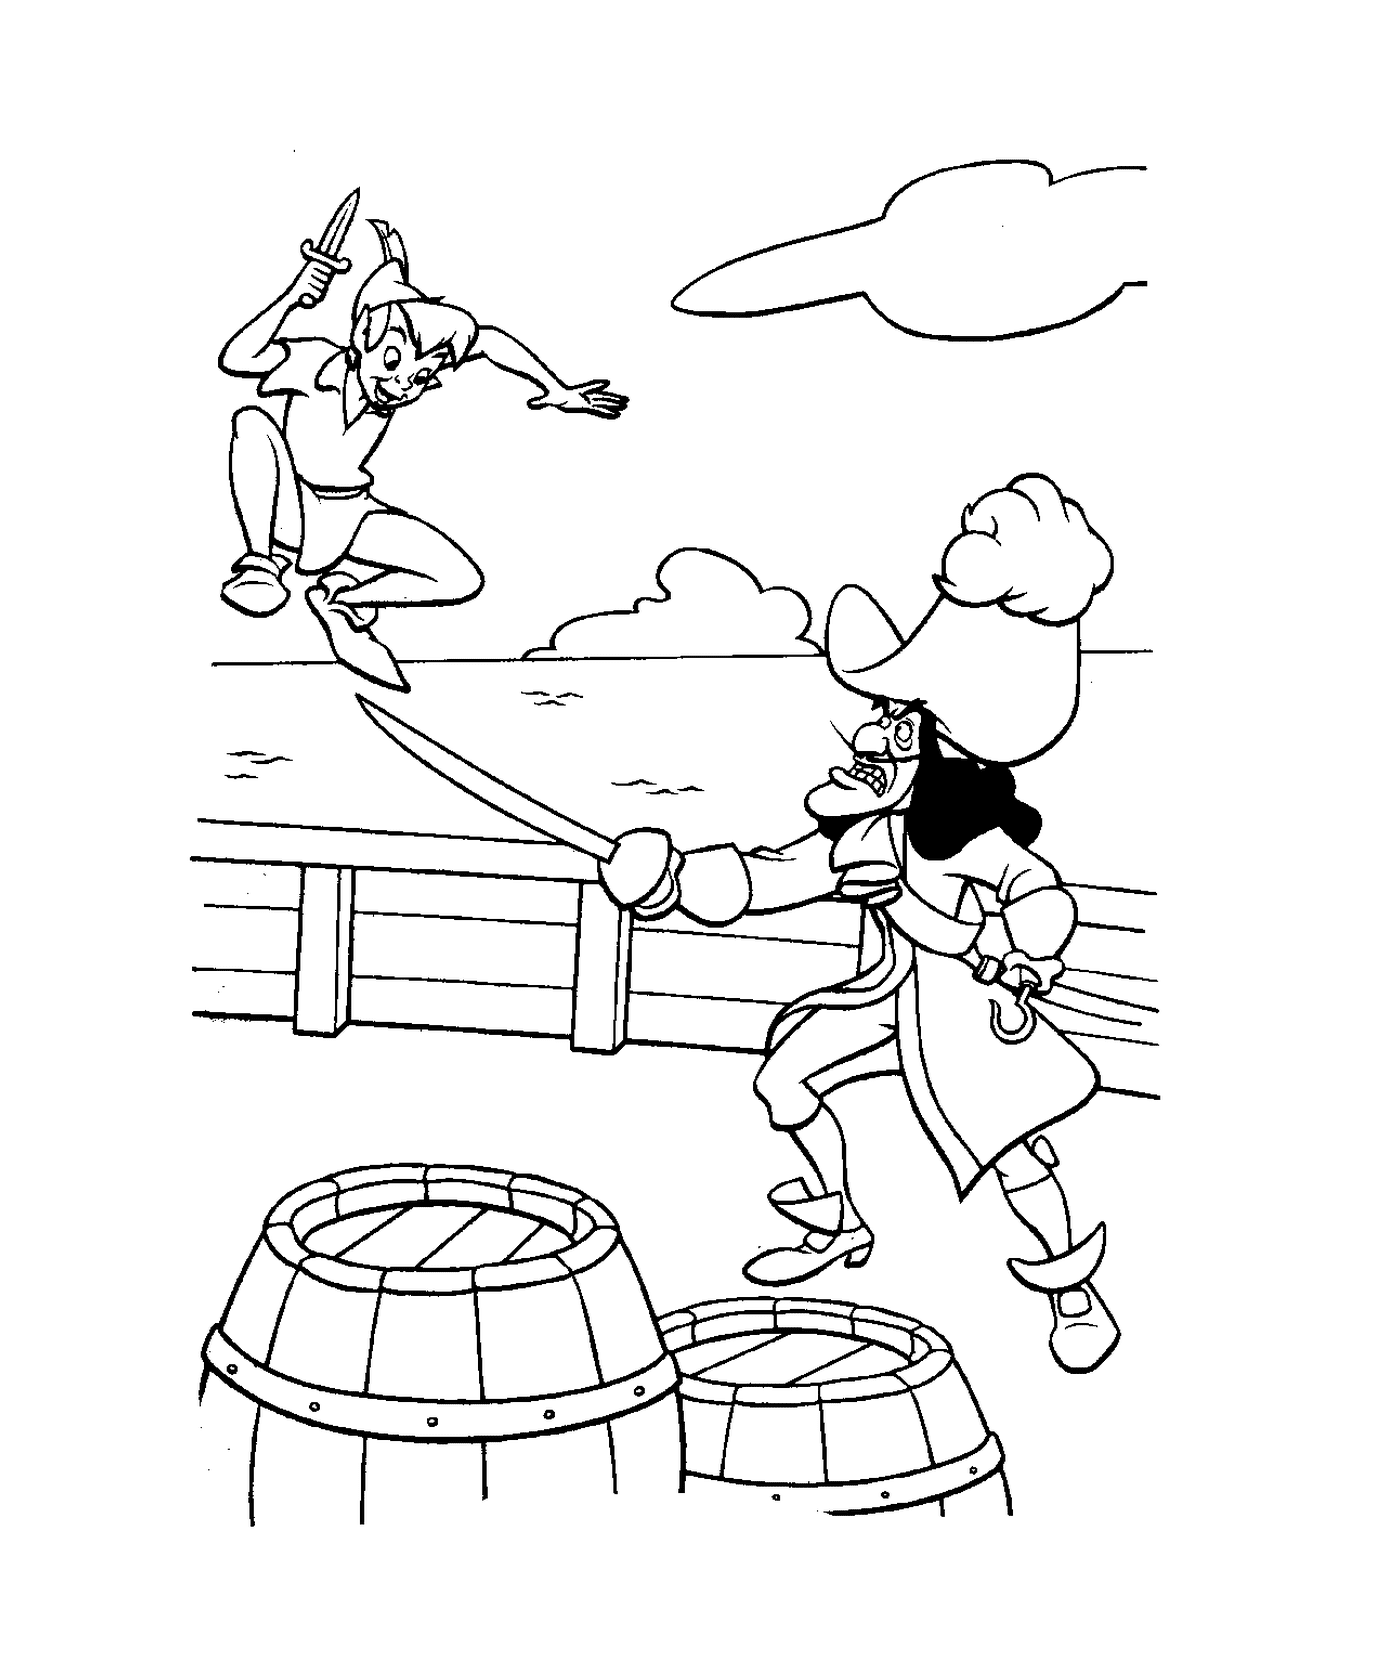   Peter Pan se bat contre pirate sur bateau 